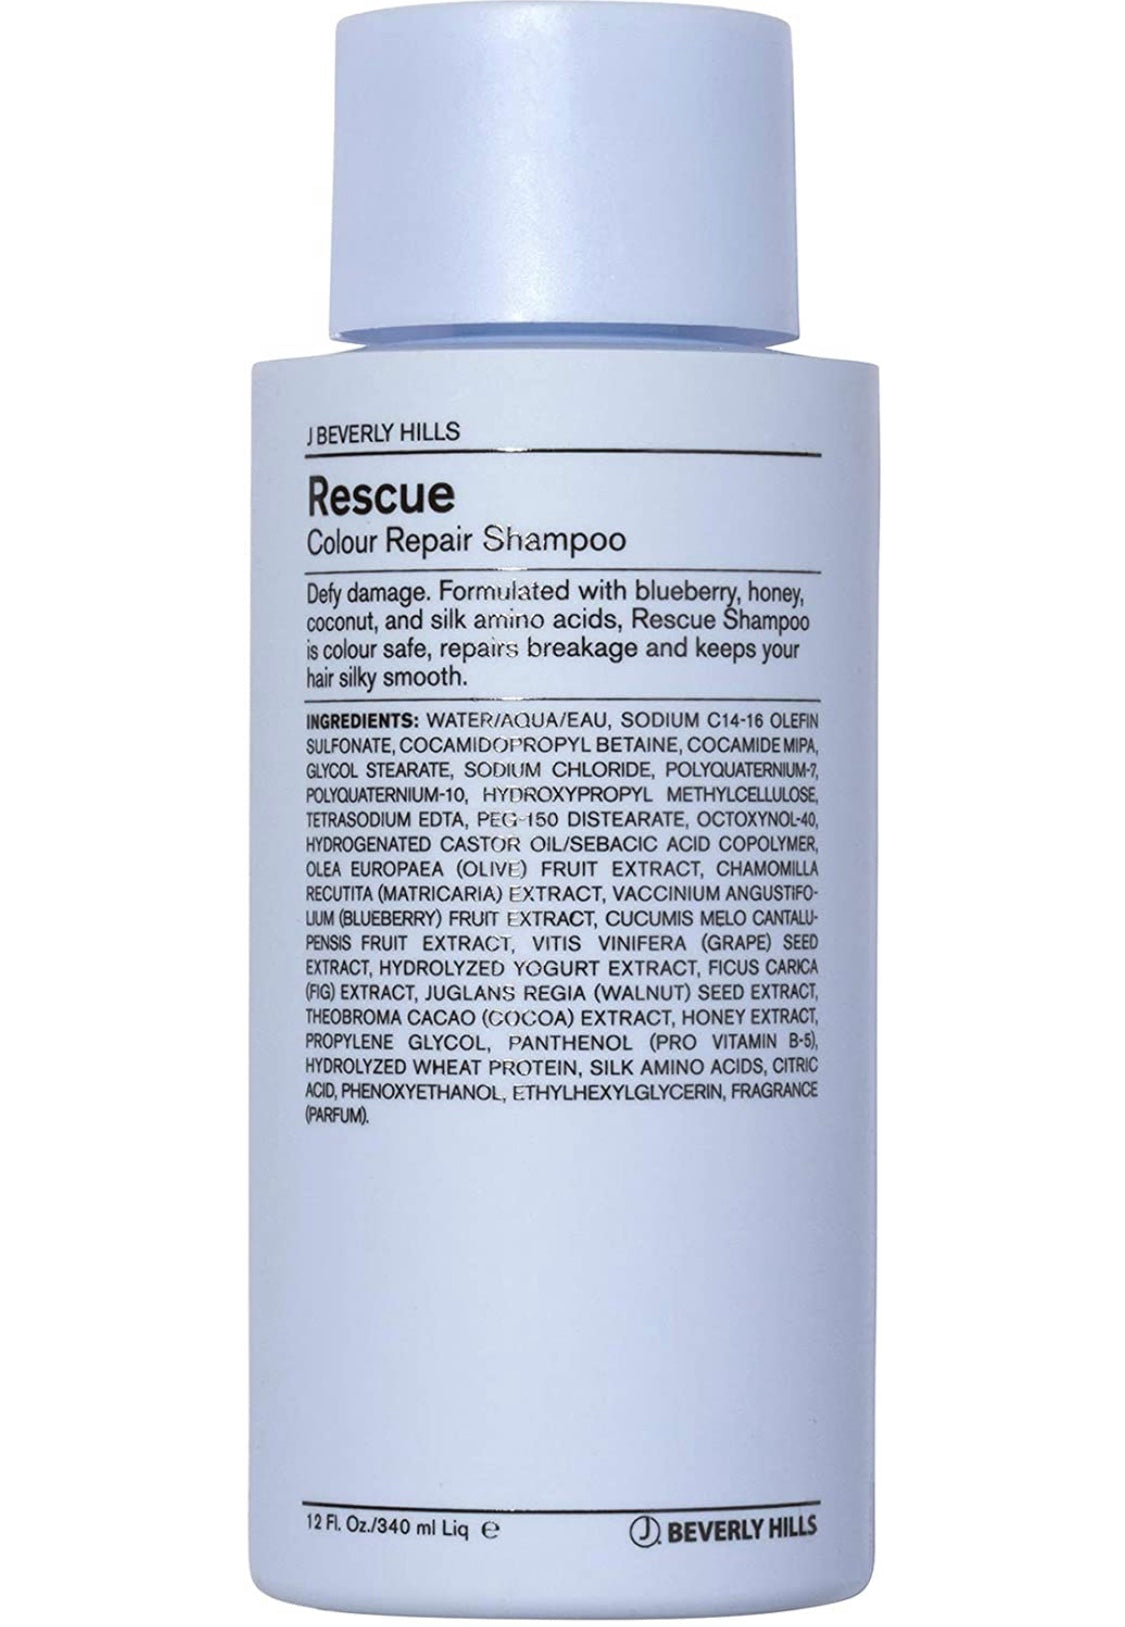 JBH - Rescue Colour repair shampoo 12 fl. oz./ 340 ml